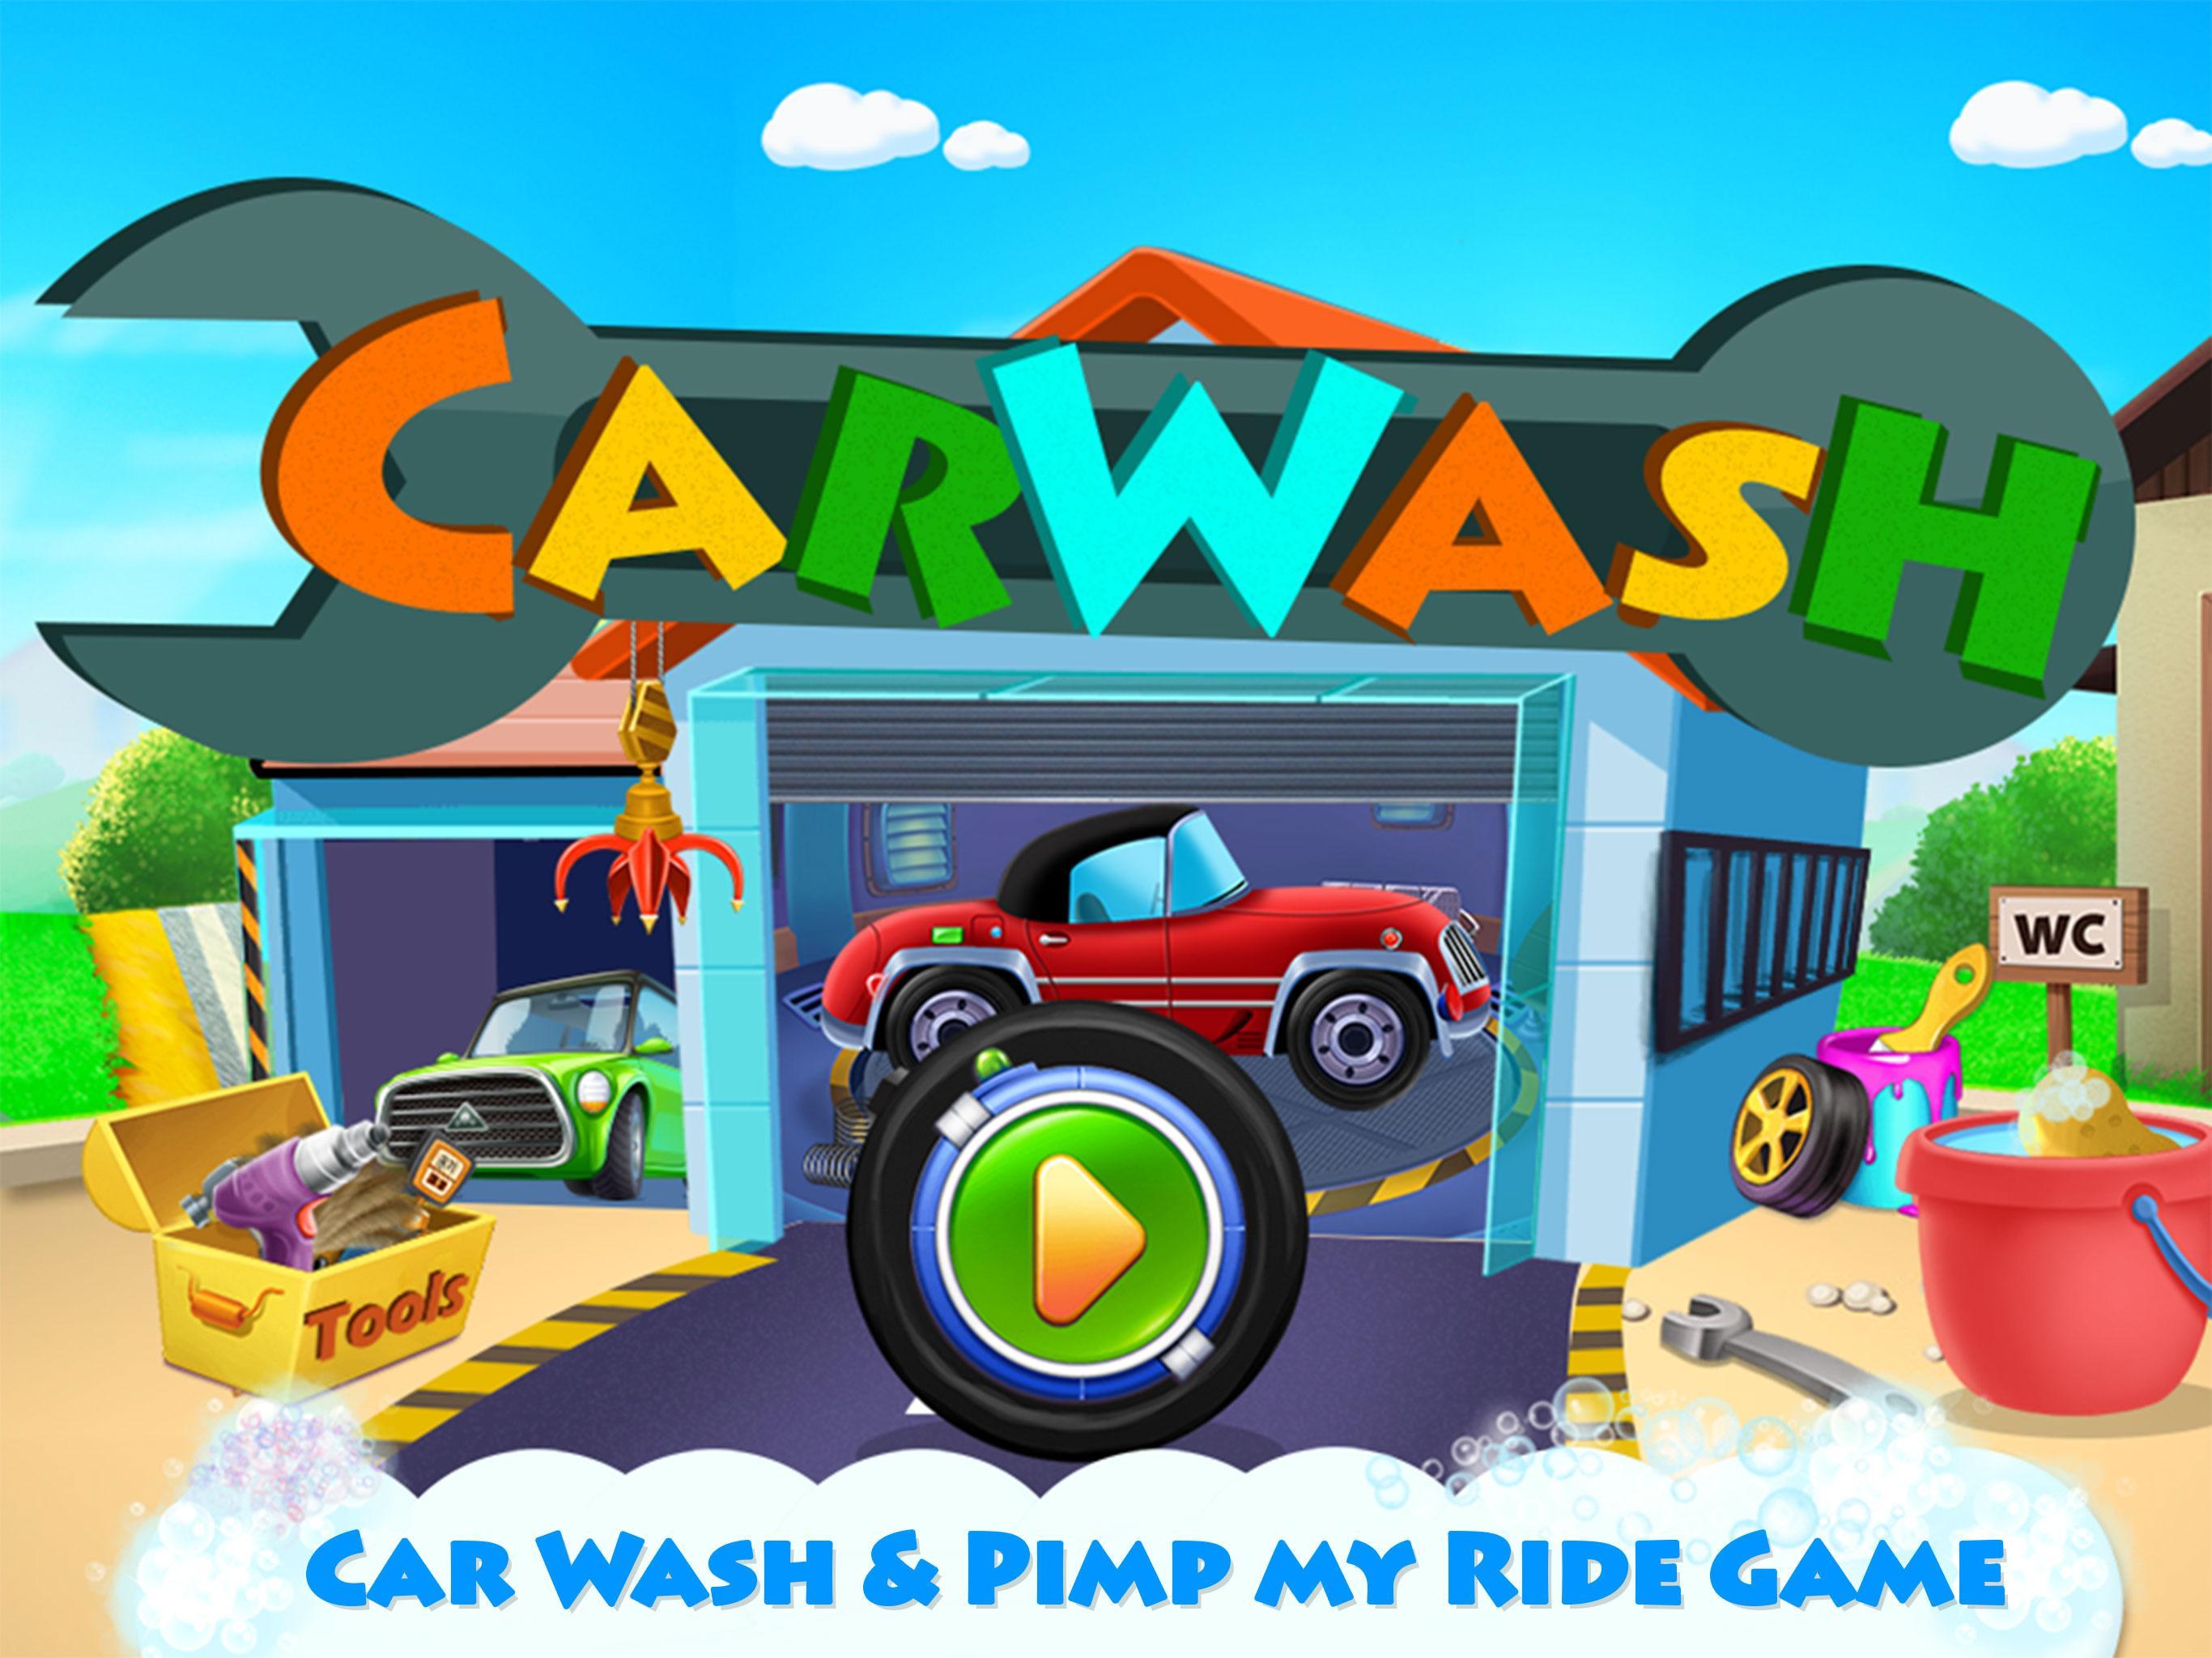 My first car игра. Car Wash игра. Игра мойка машин для мальчиков 3 лет. Pimp my car игра. Игра на андроид автомойка.